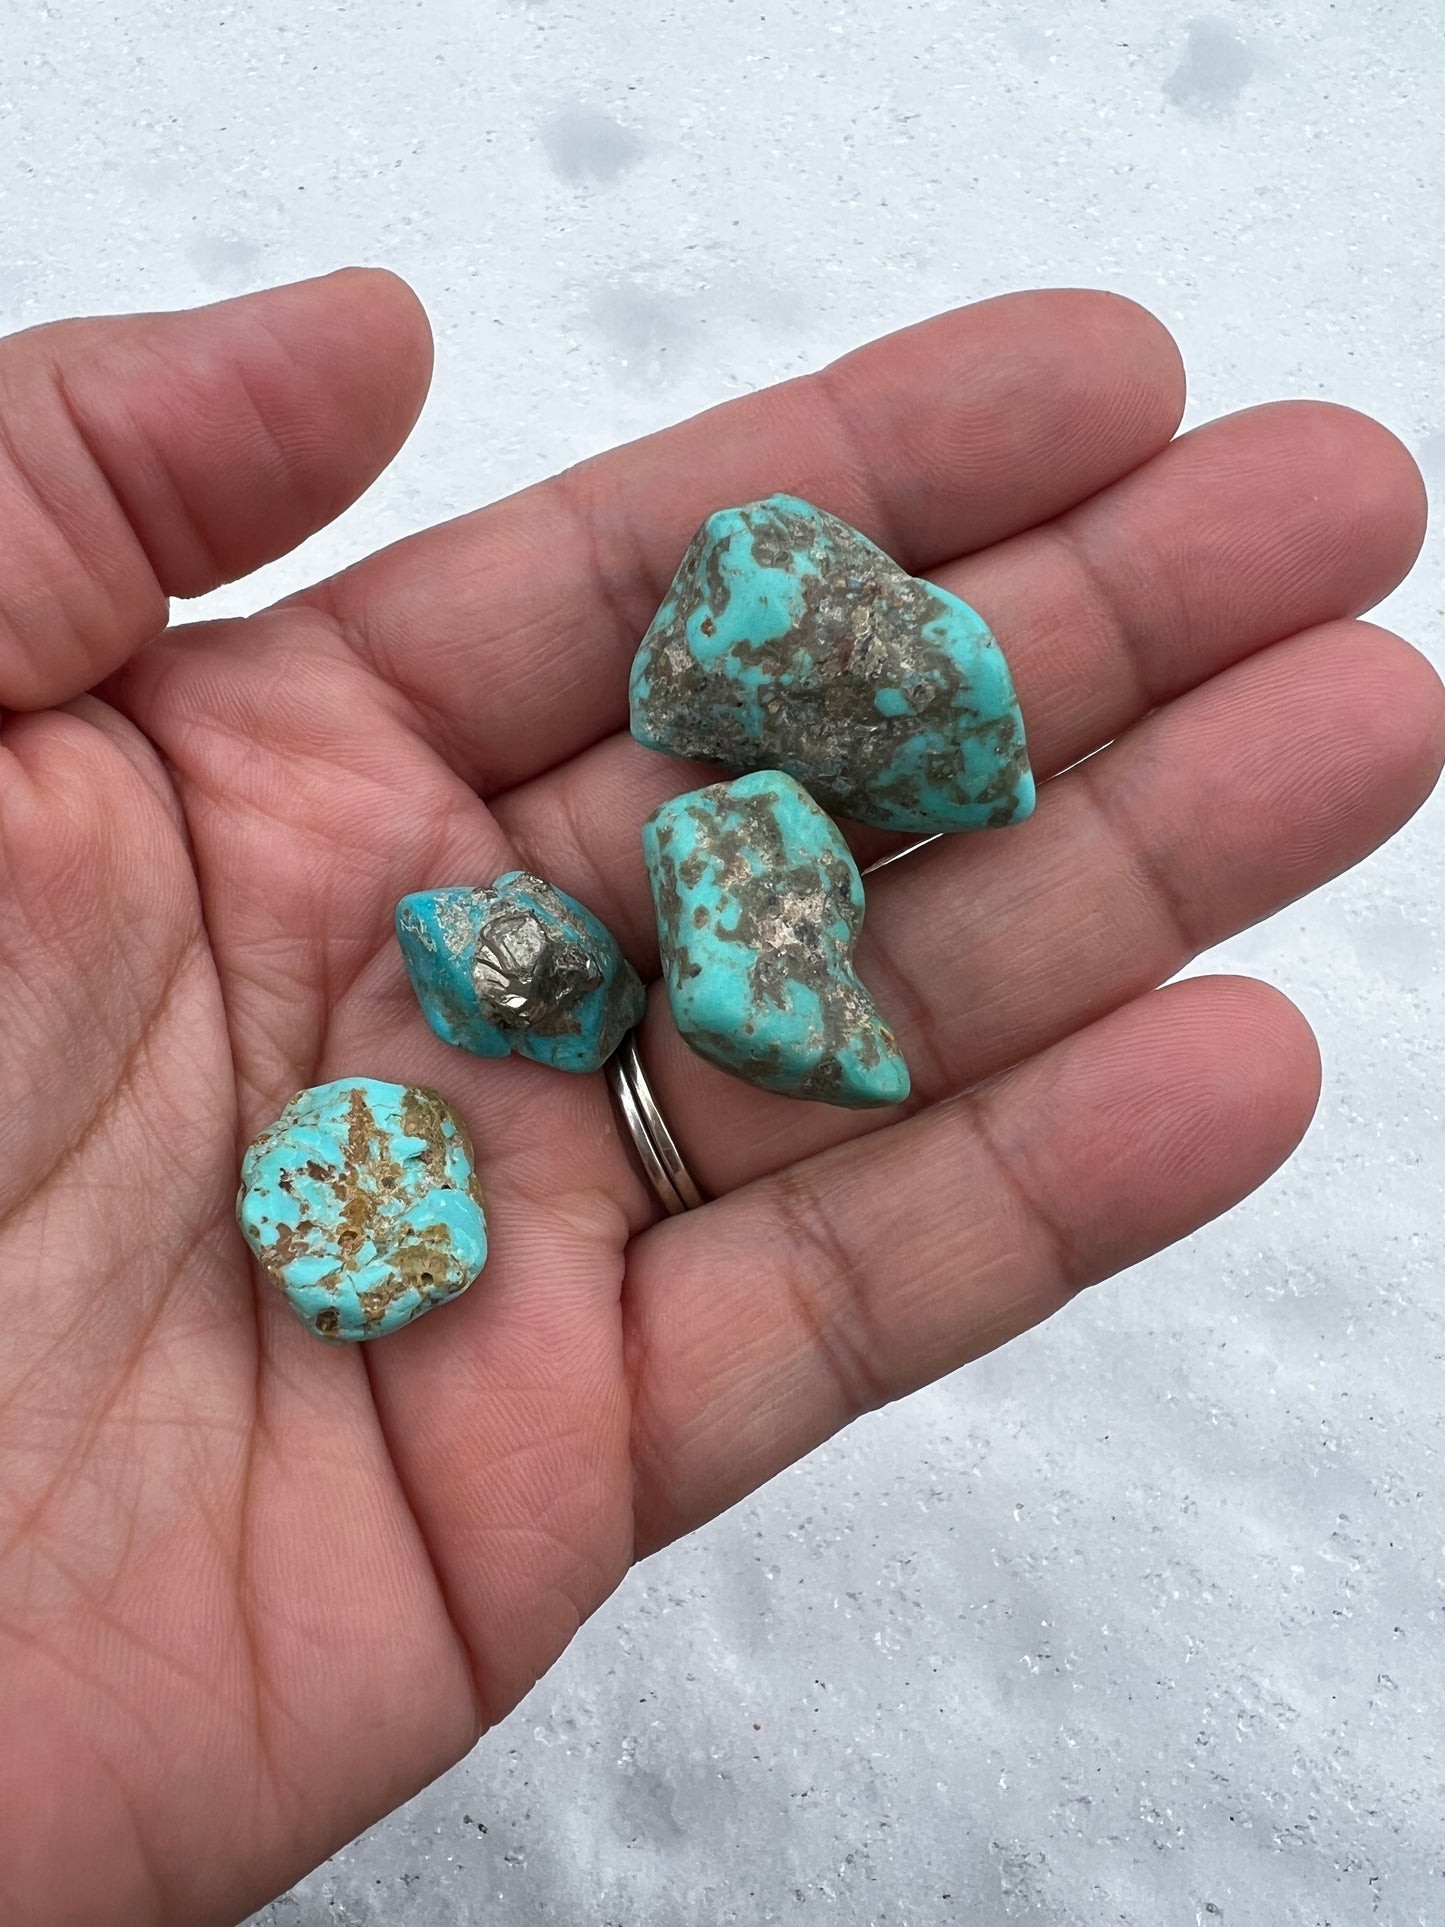 Turquoise Rough Stone- $8 per gram